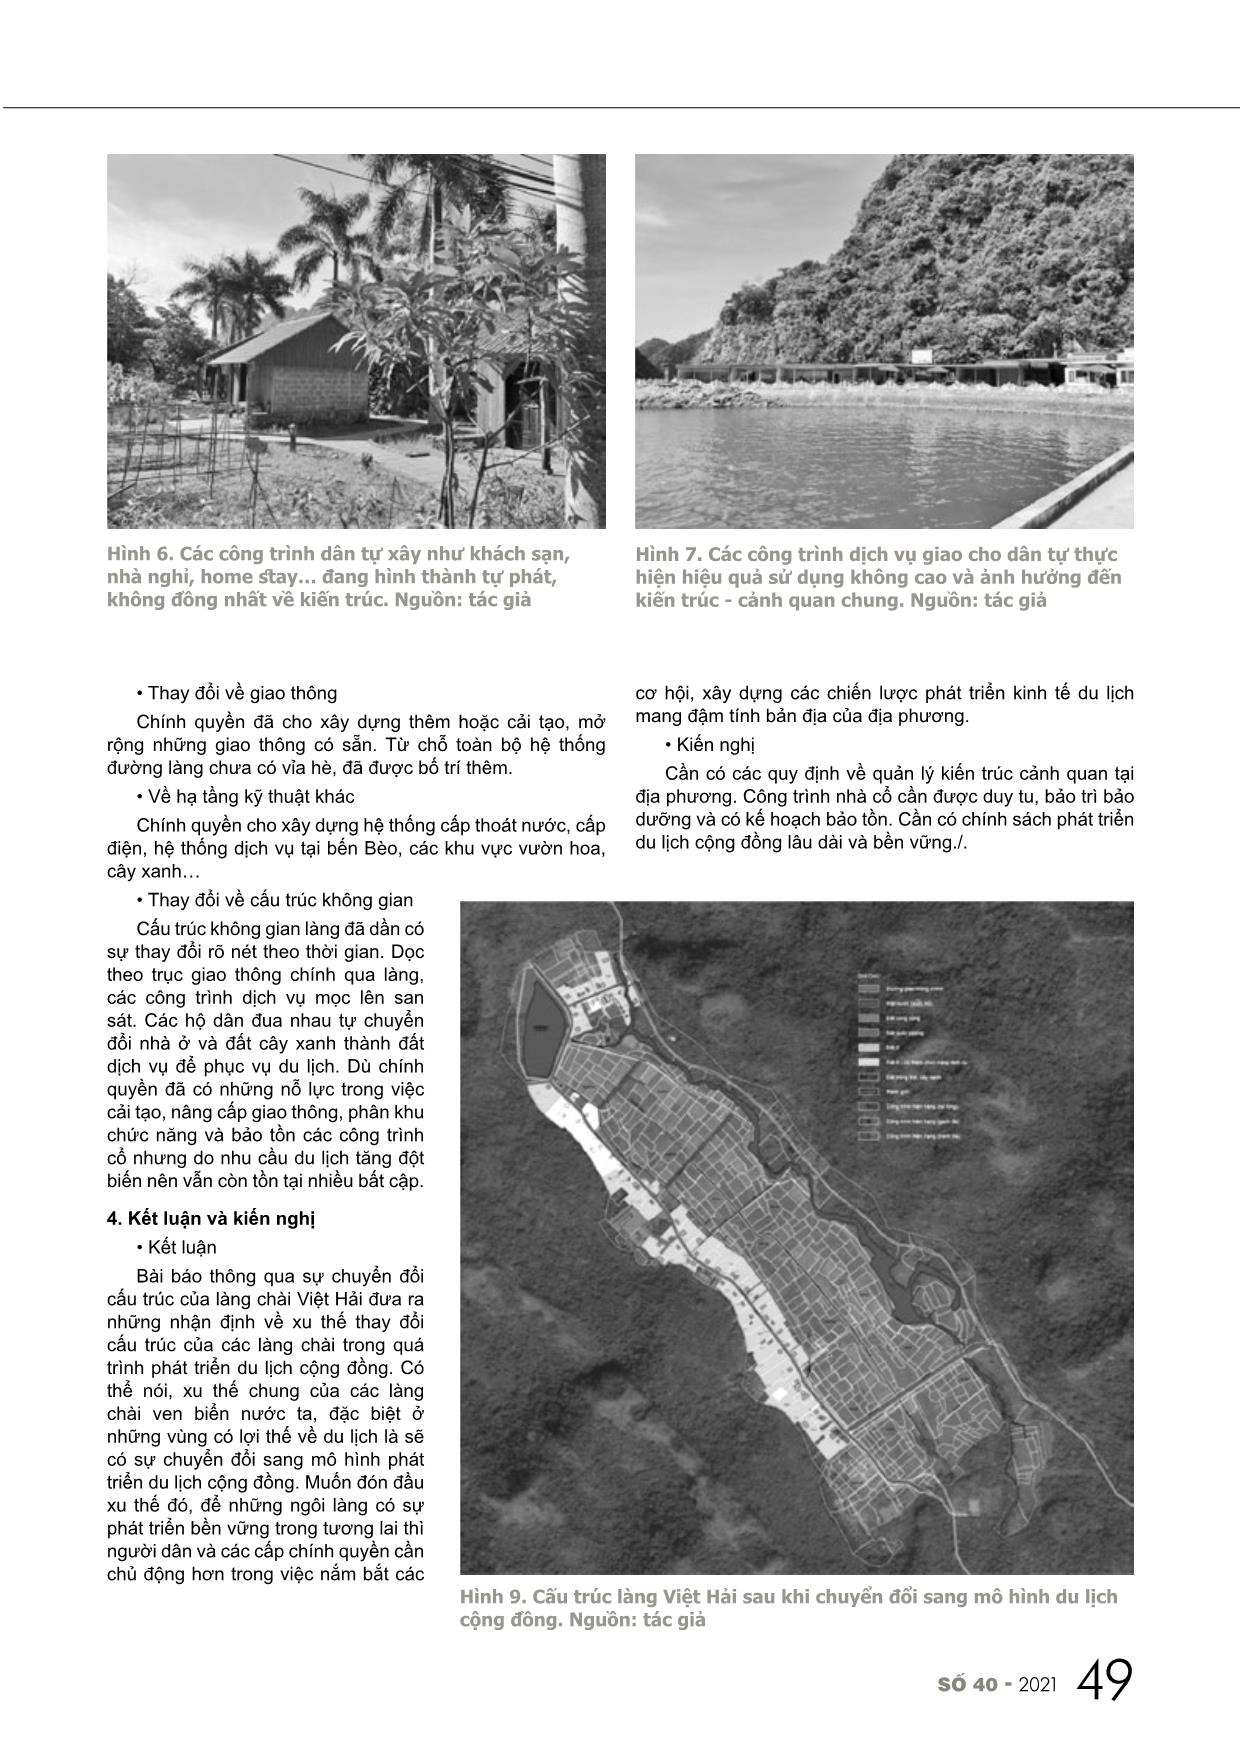 Sự chuyển đổi cấu trúc làng chài Việt Hải trong quá trình phát triển du lịch cộng đồng trang 5